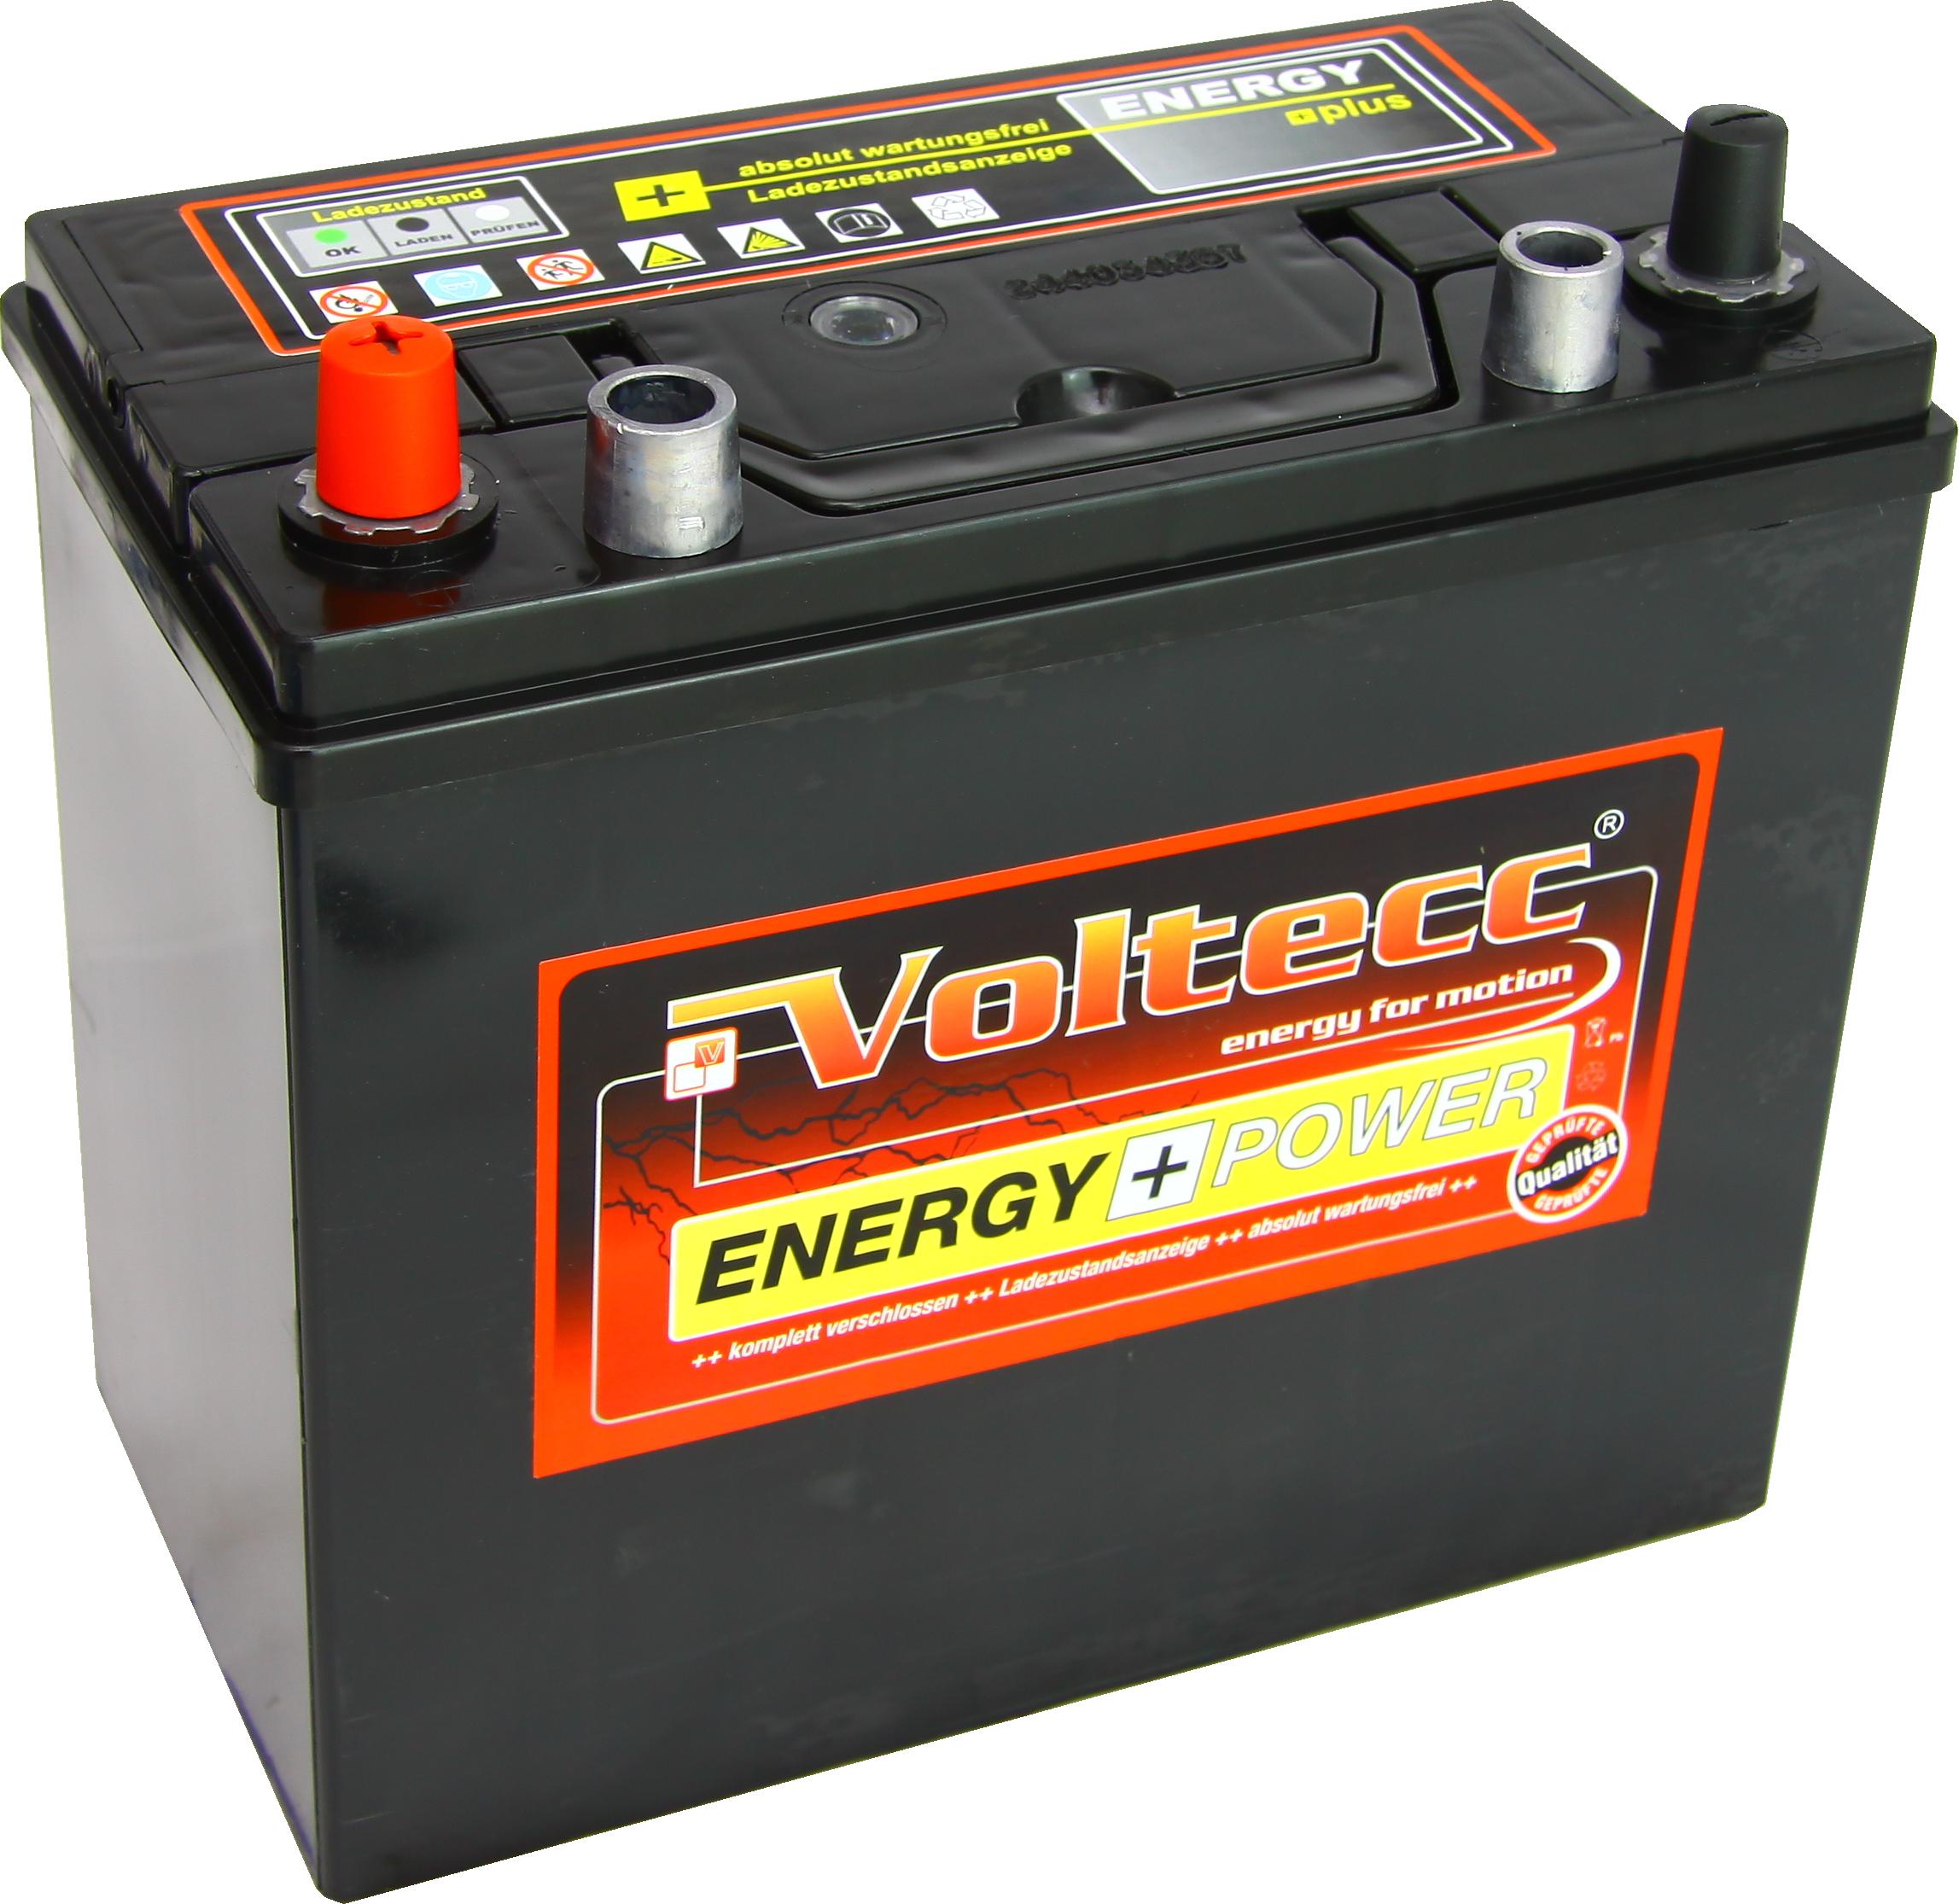 Autobatterie Voltecc Asia 54524 12V 45Ah 360A günstig kaufen